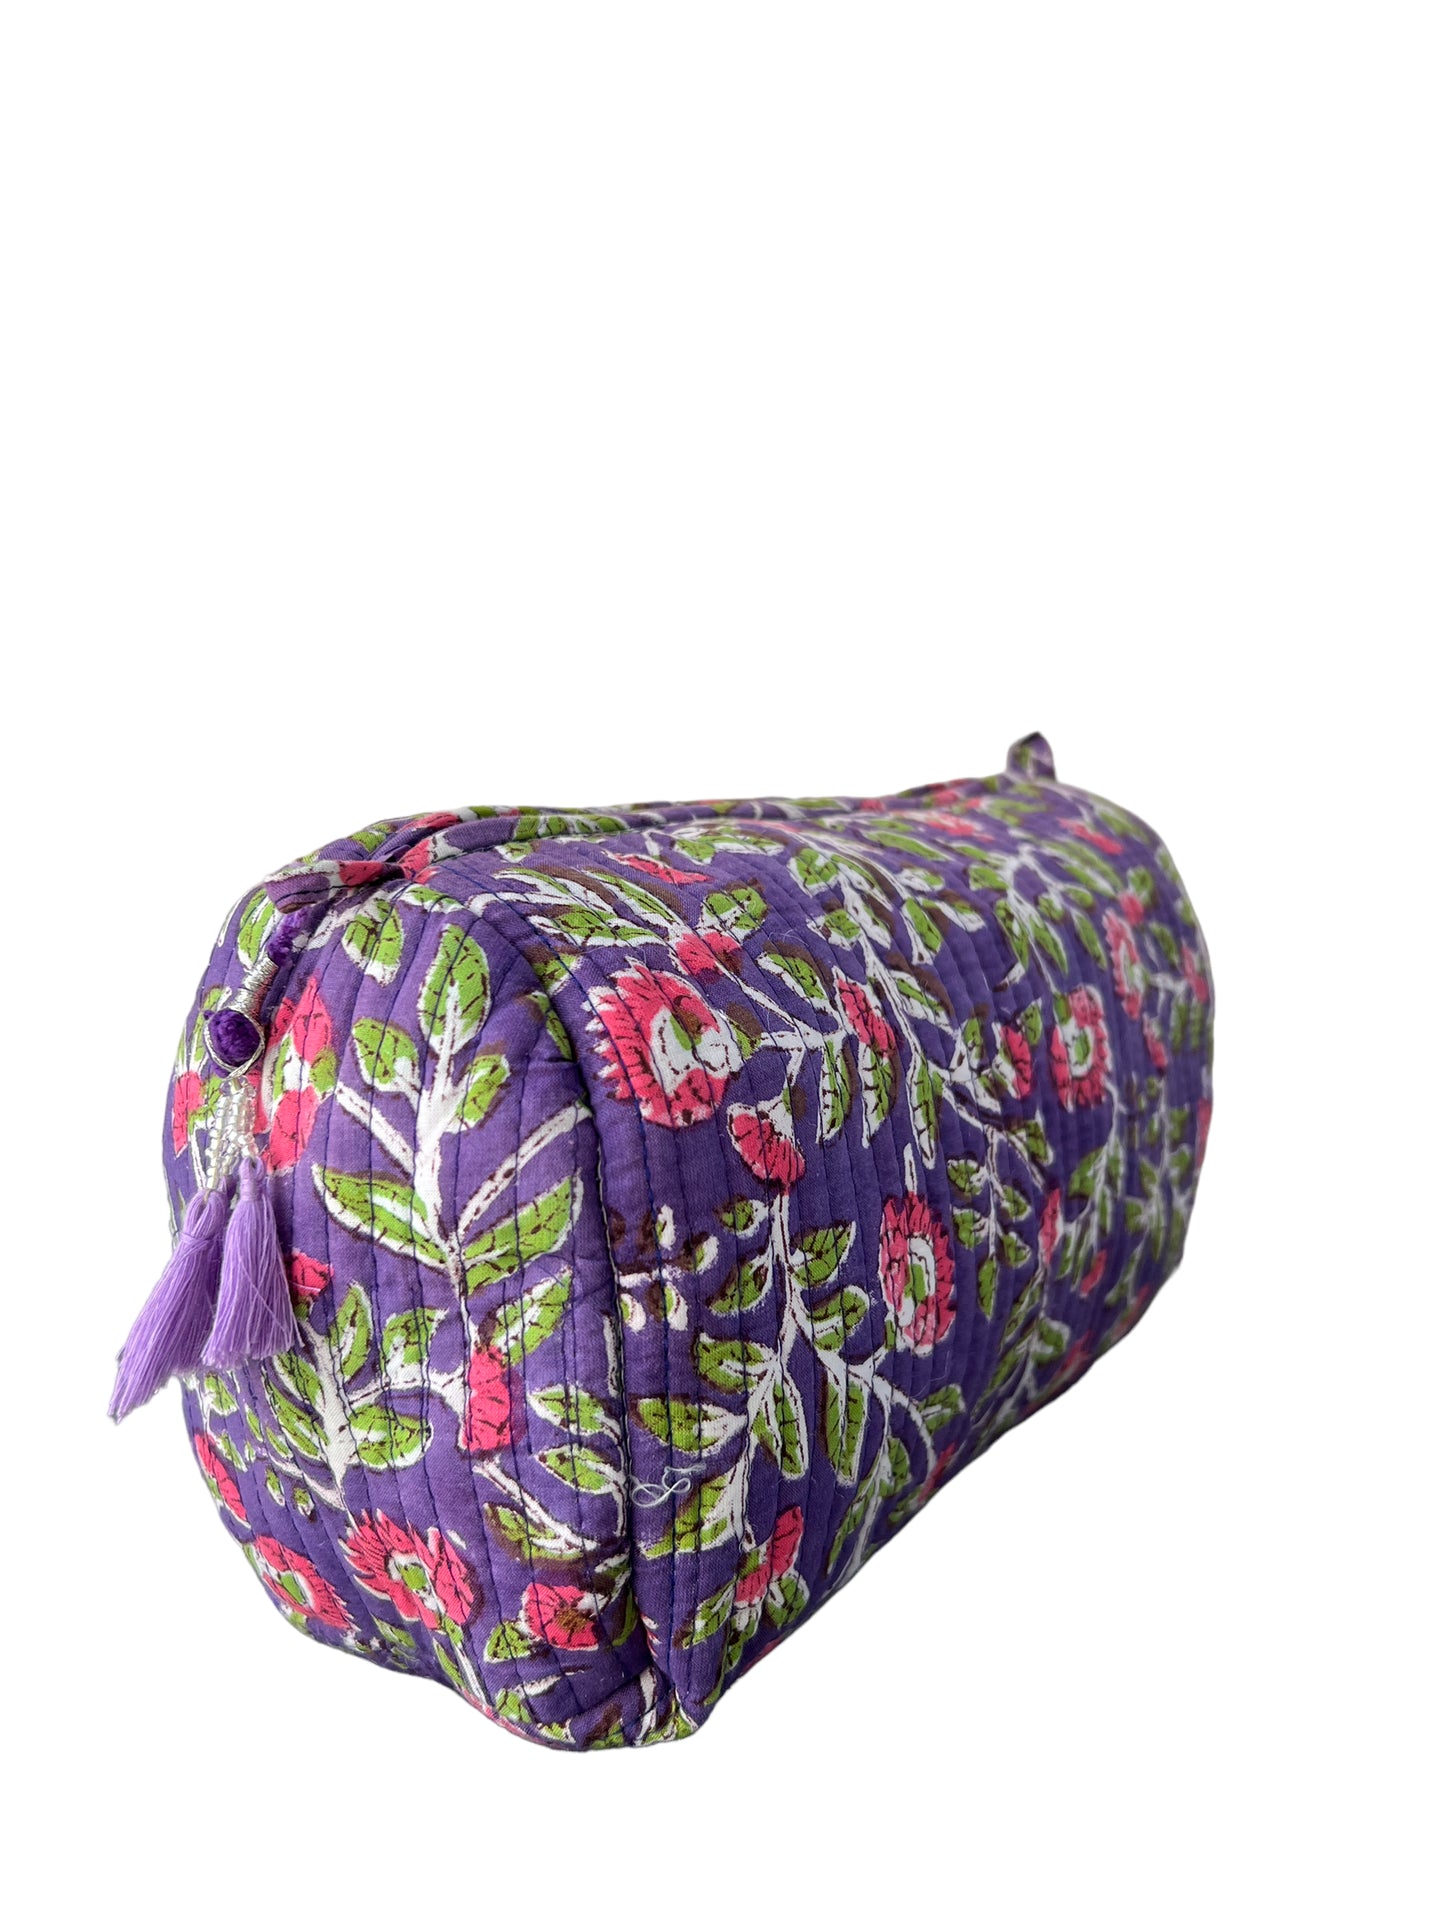 (M089) Make Up Bag Purple Floral